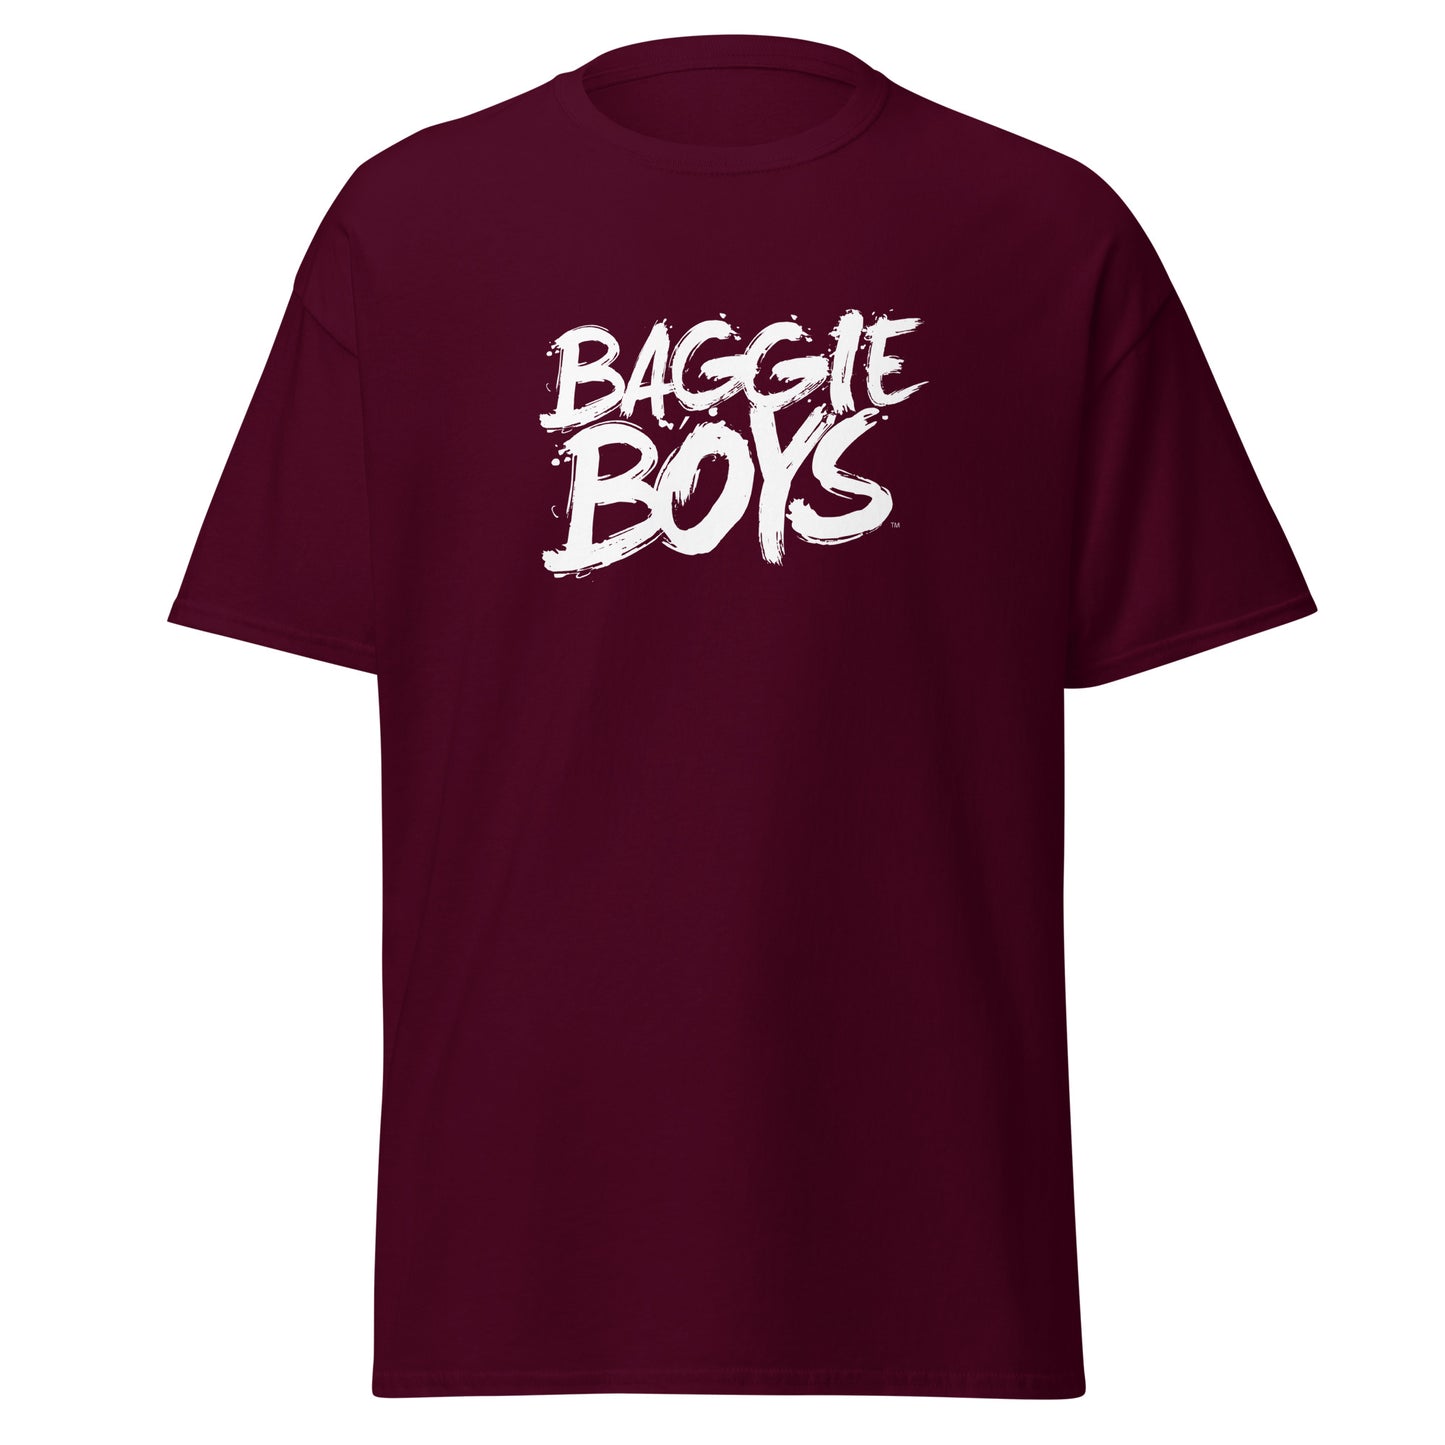 "Baggie Boys" Men's Classic Tee